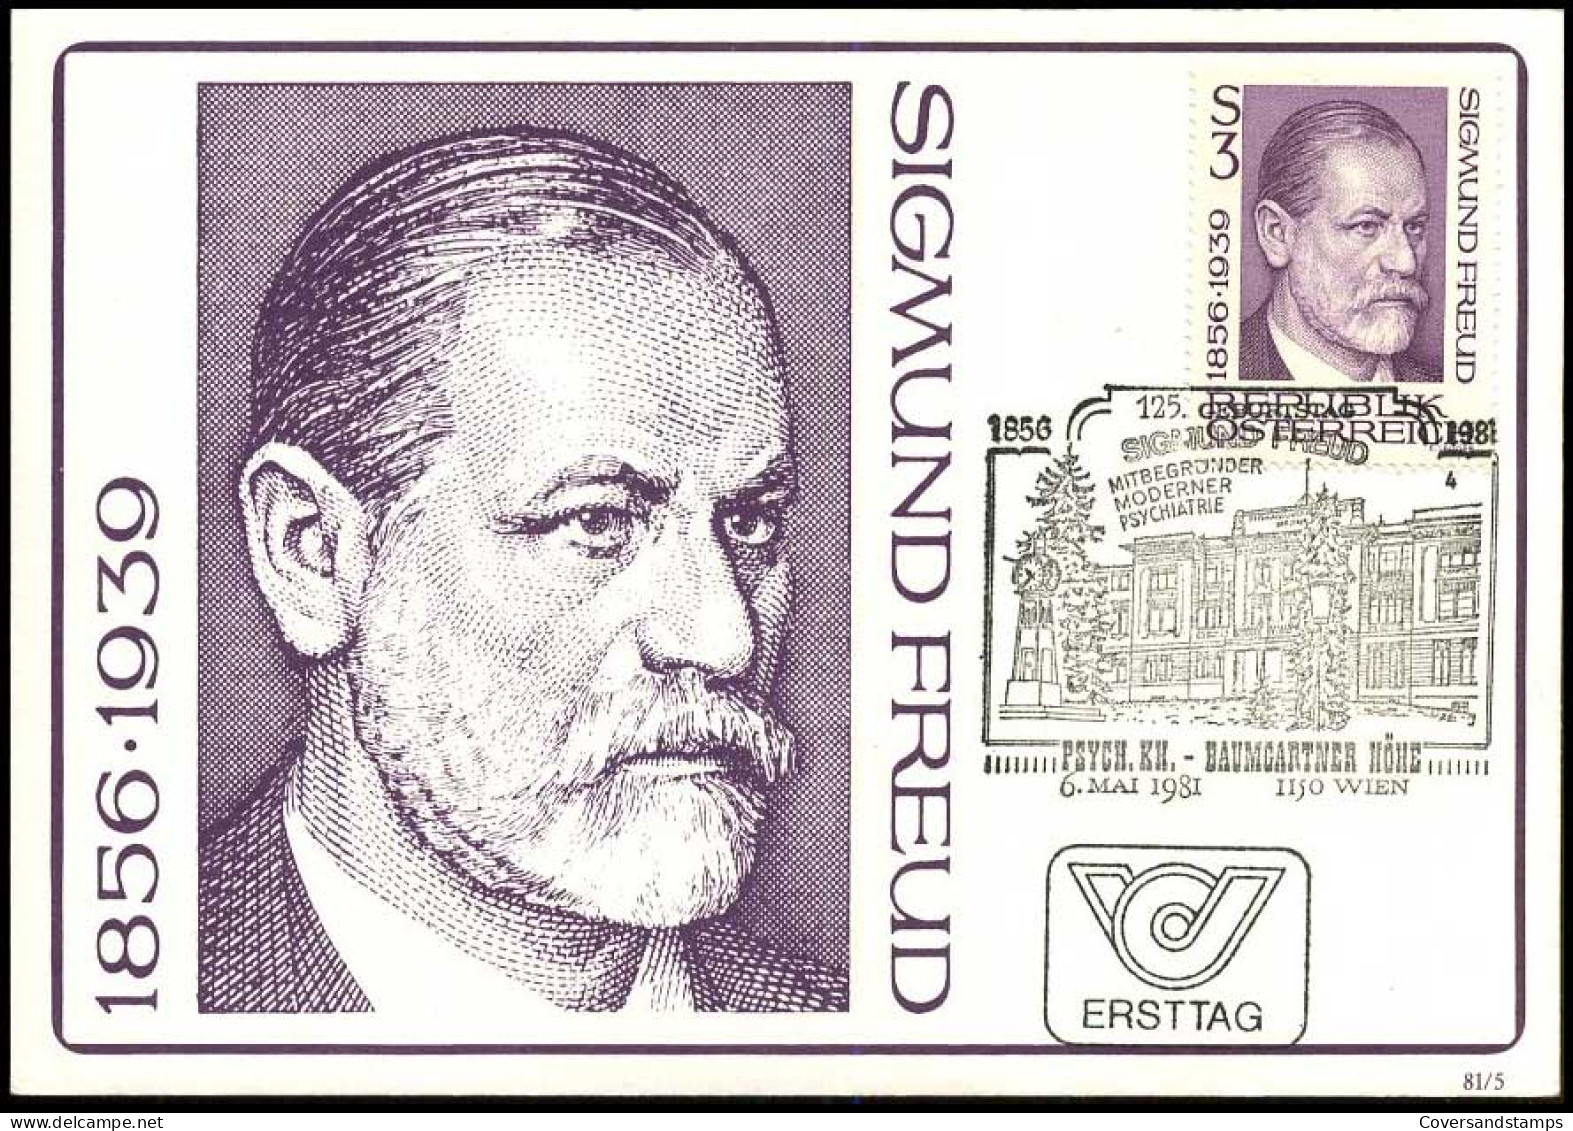 österreich - Maximum Card - Siegmund Freud - Maximumkaarten